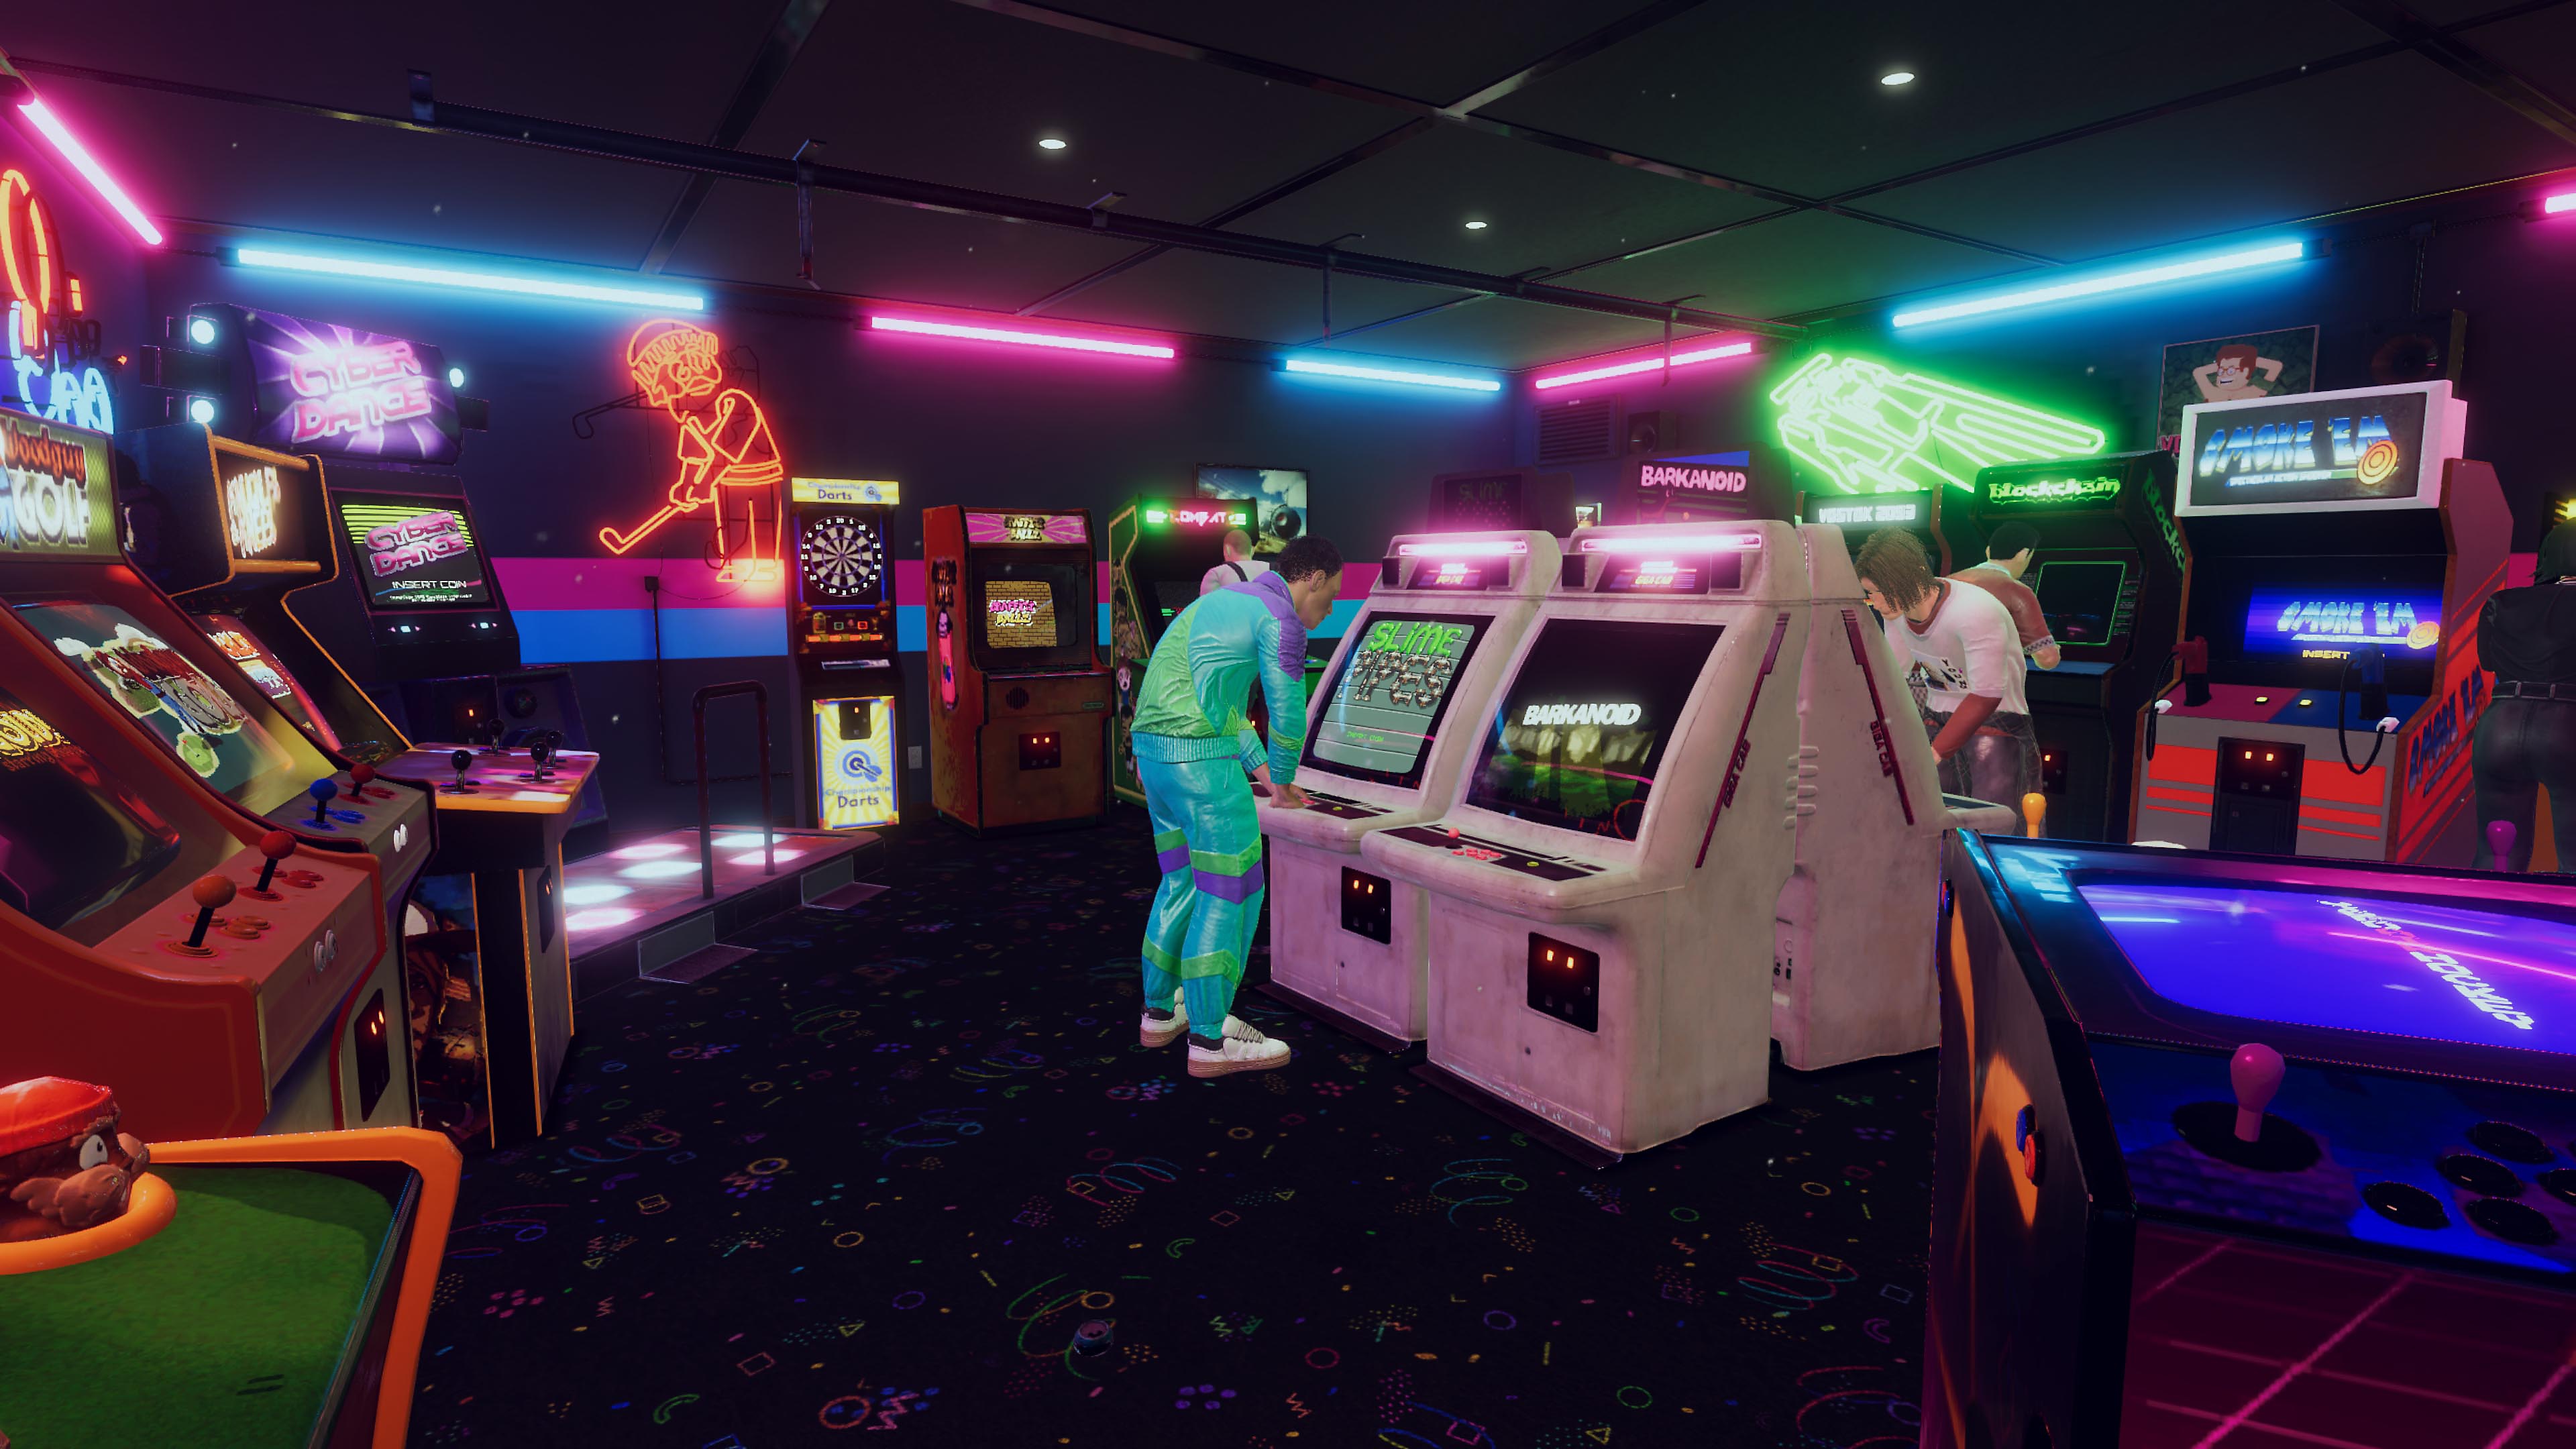 Arcade Paradise - Istantanea della schermata che mostra un arcade in stile retrò anni '90 con luci al neon blu e rosa